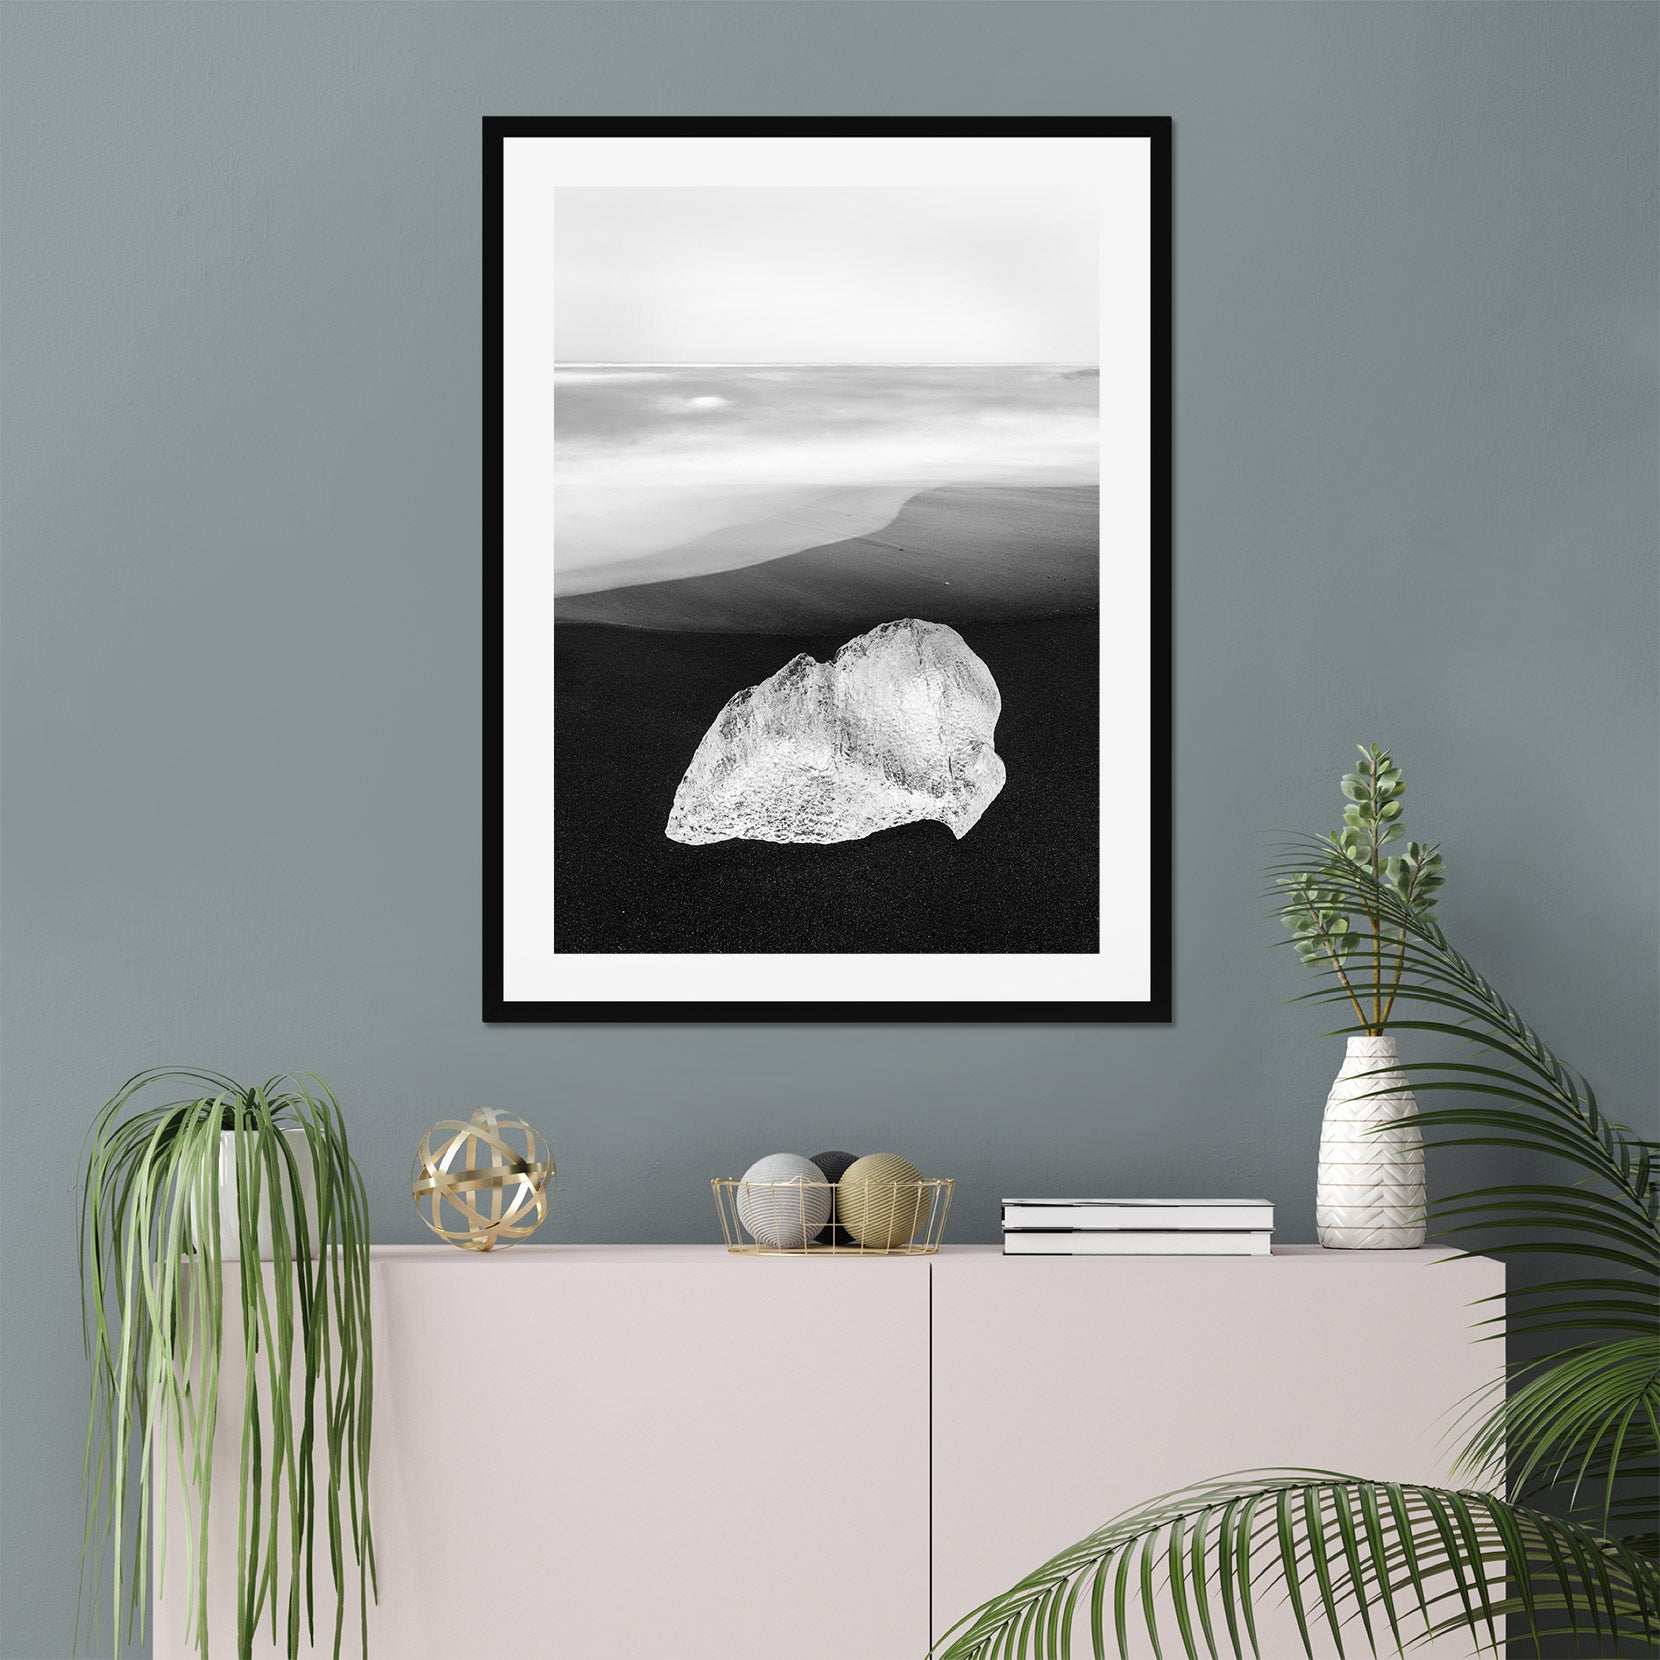 A framed print of a ice on black sand beach